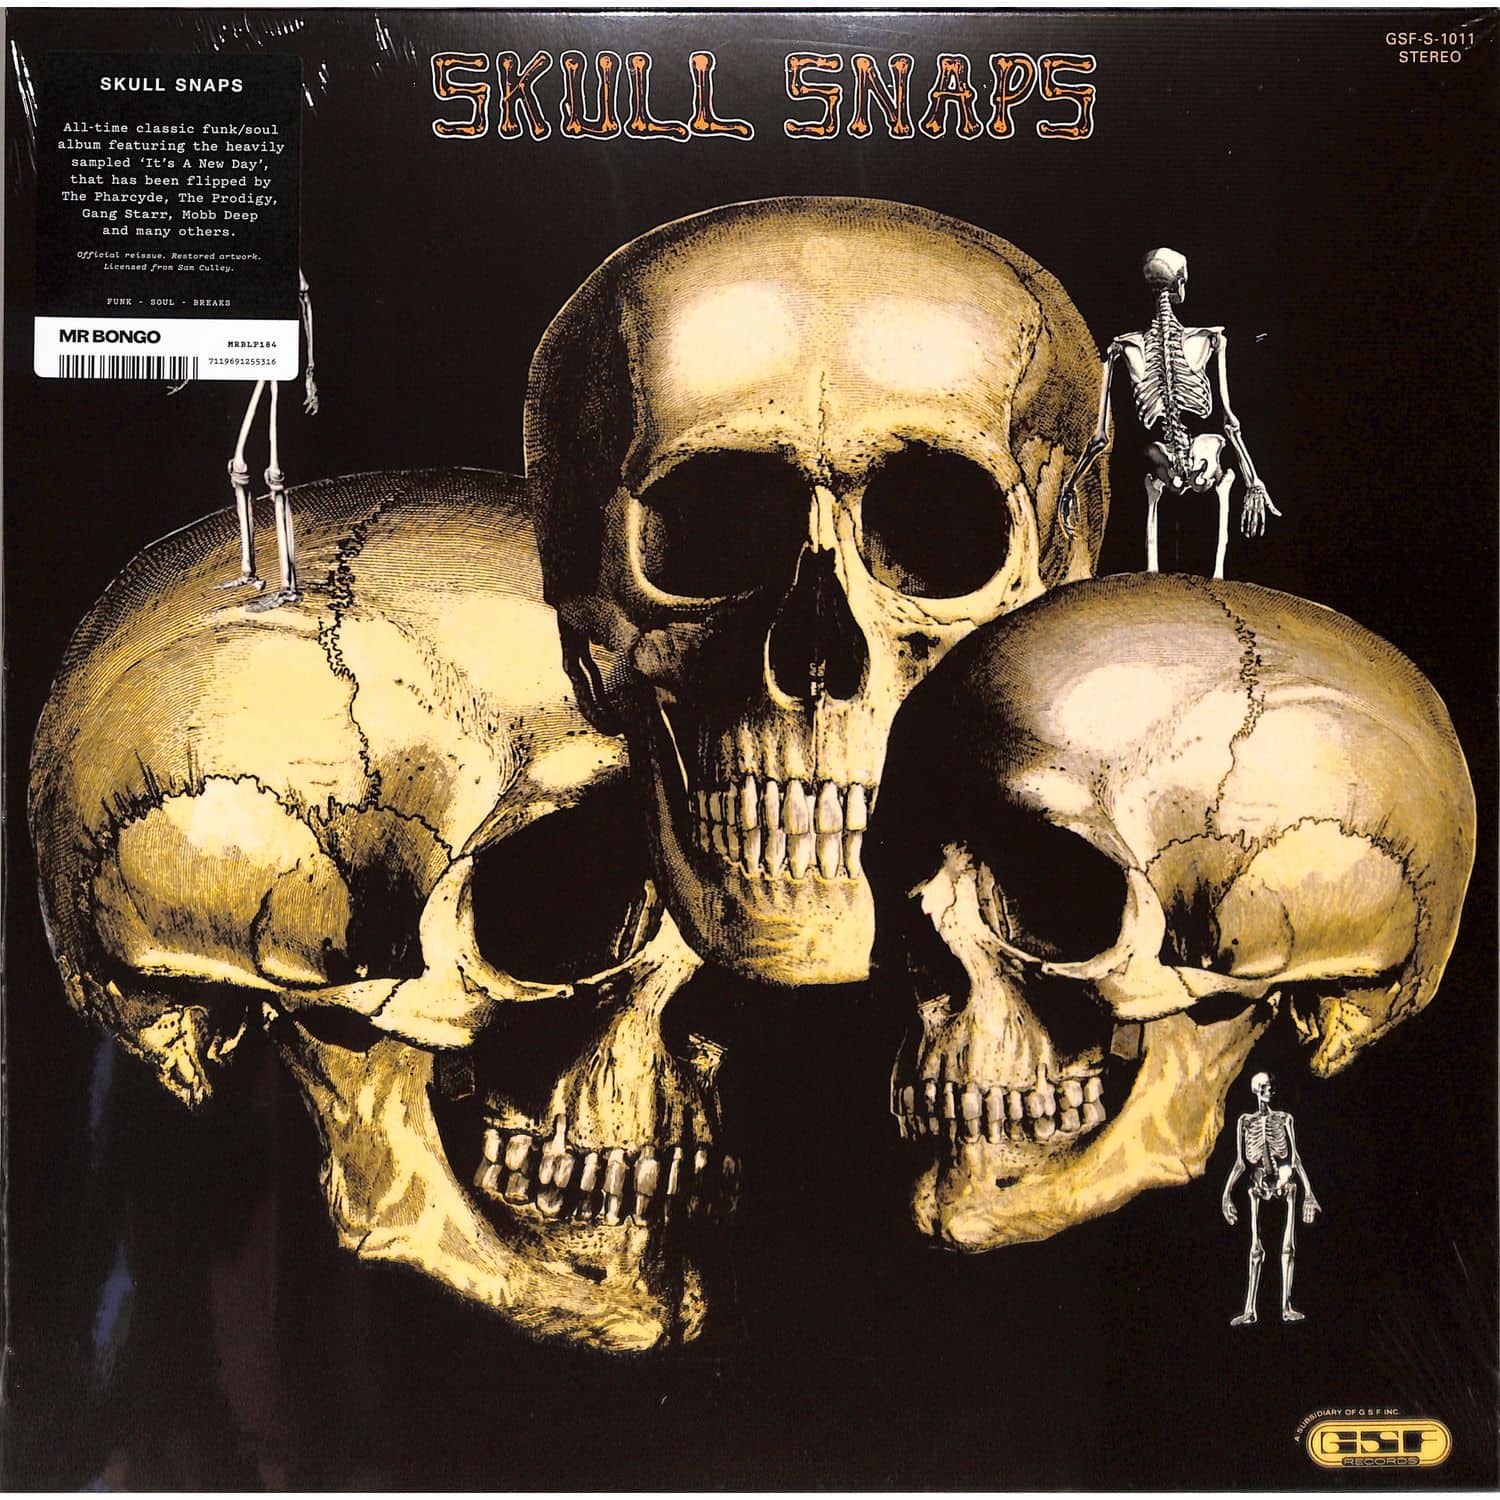 Skull Snaps - SKULL SNAPS 